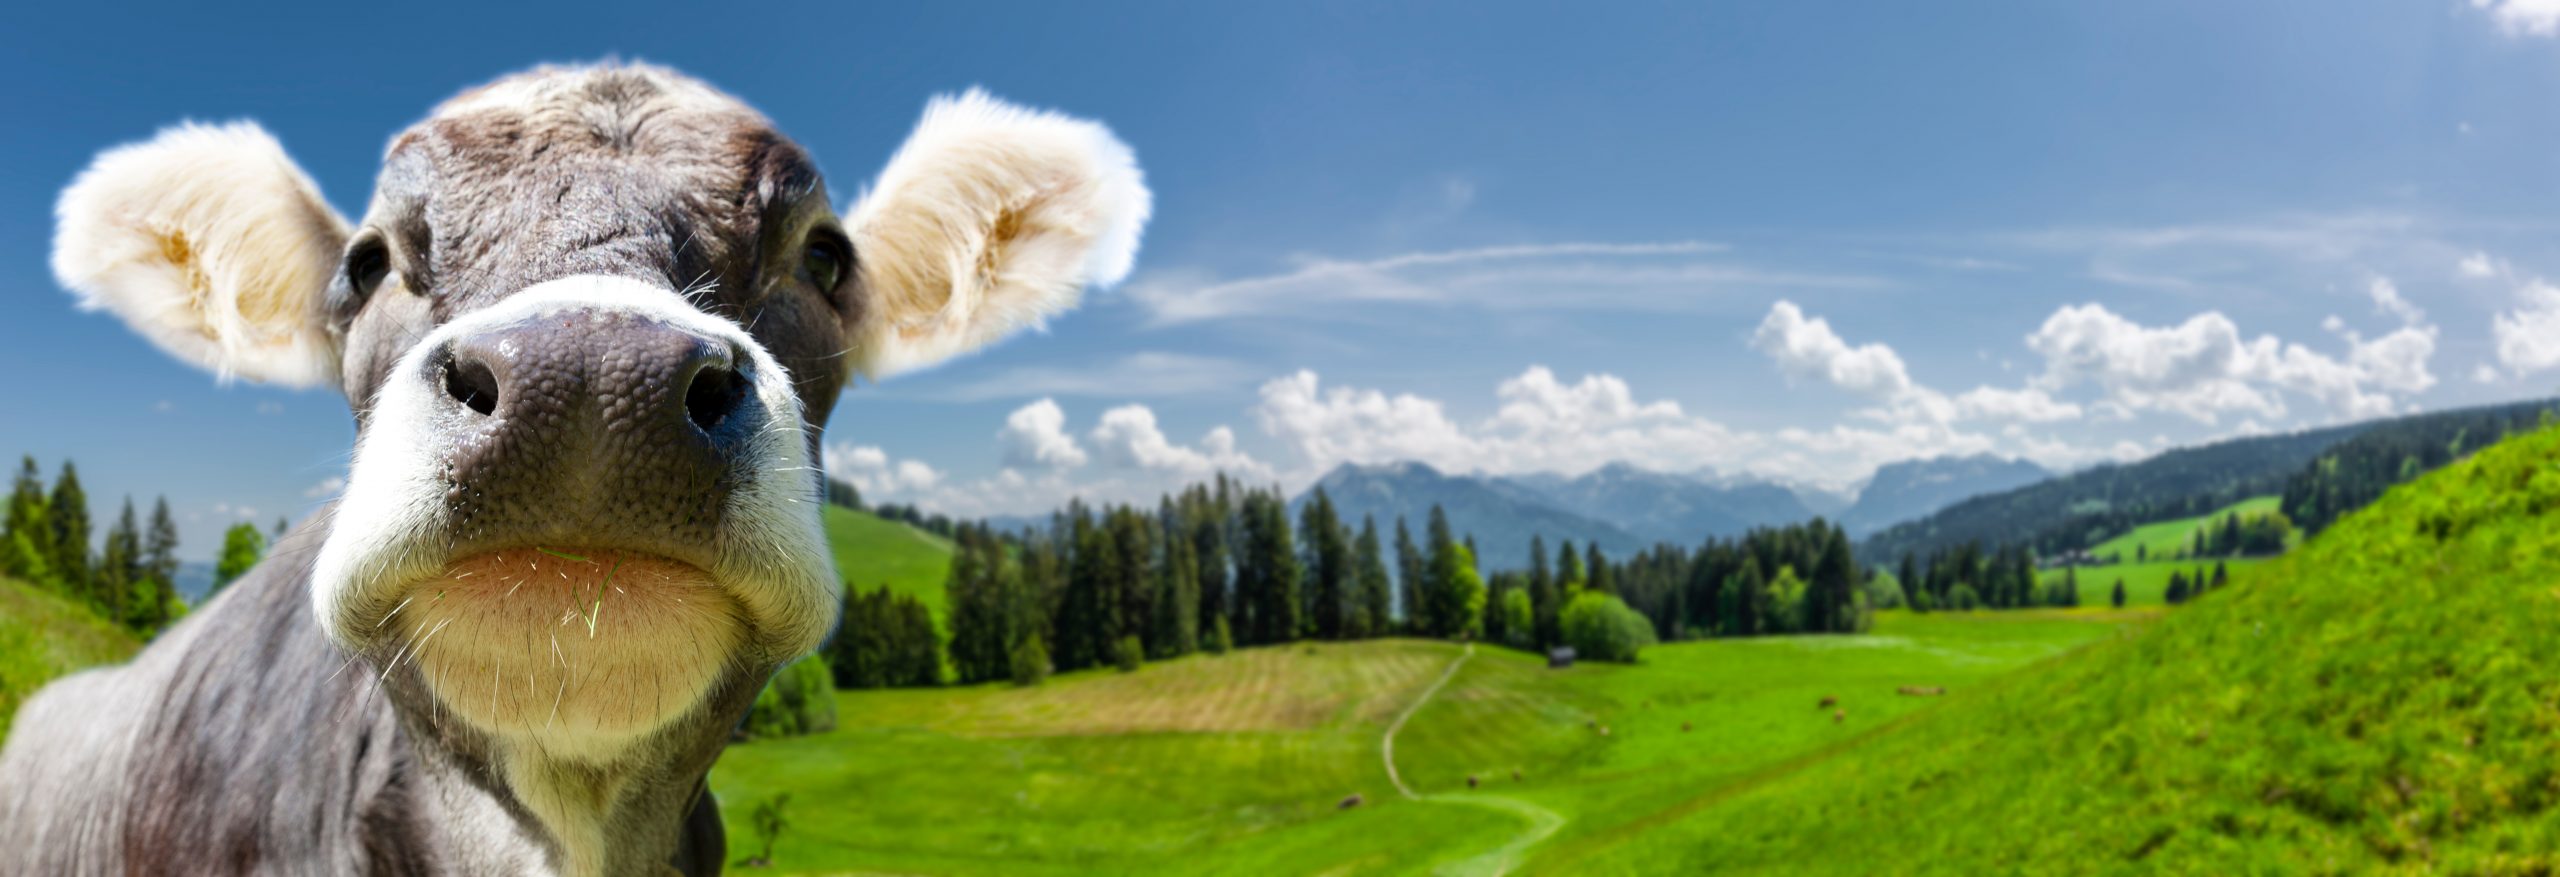 Landschaft mit Kuh im Bregenzer Wald in Vorarlberg, Österreich